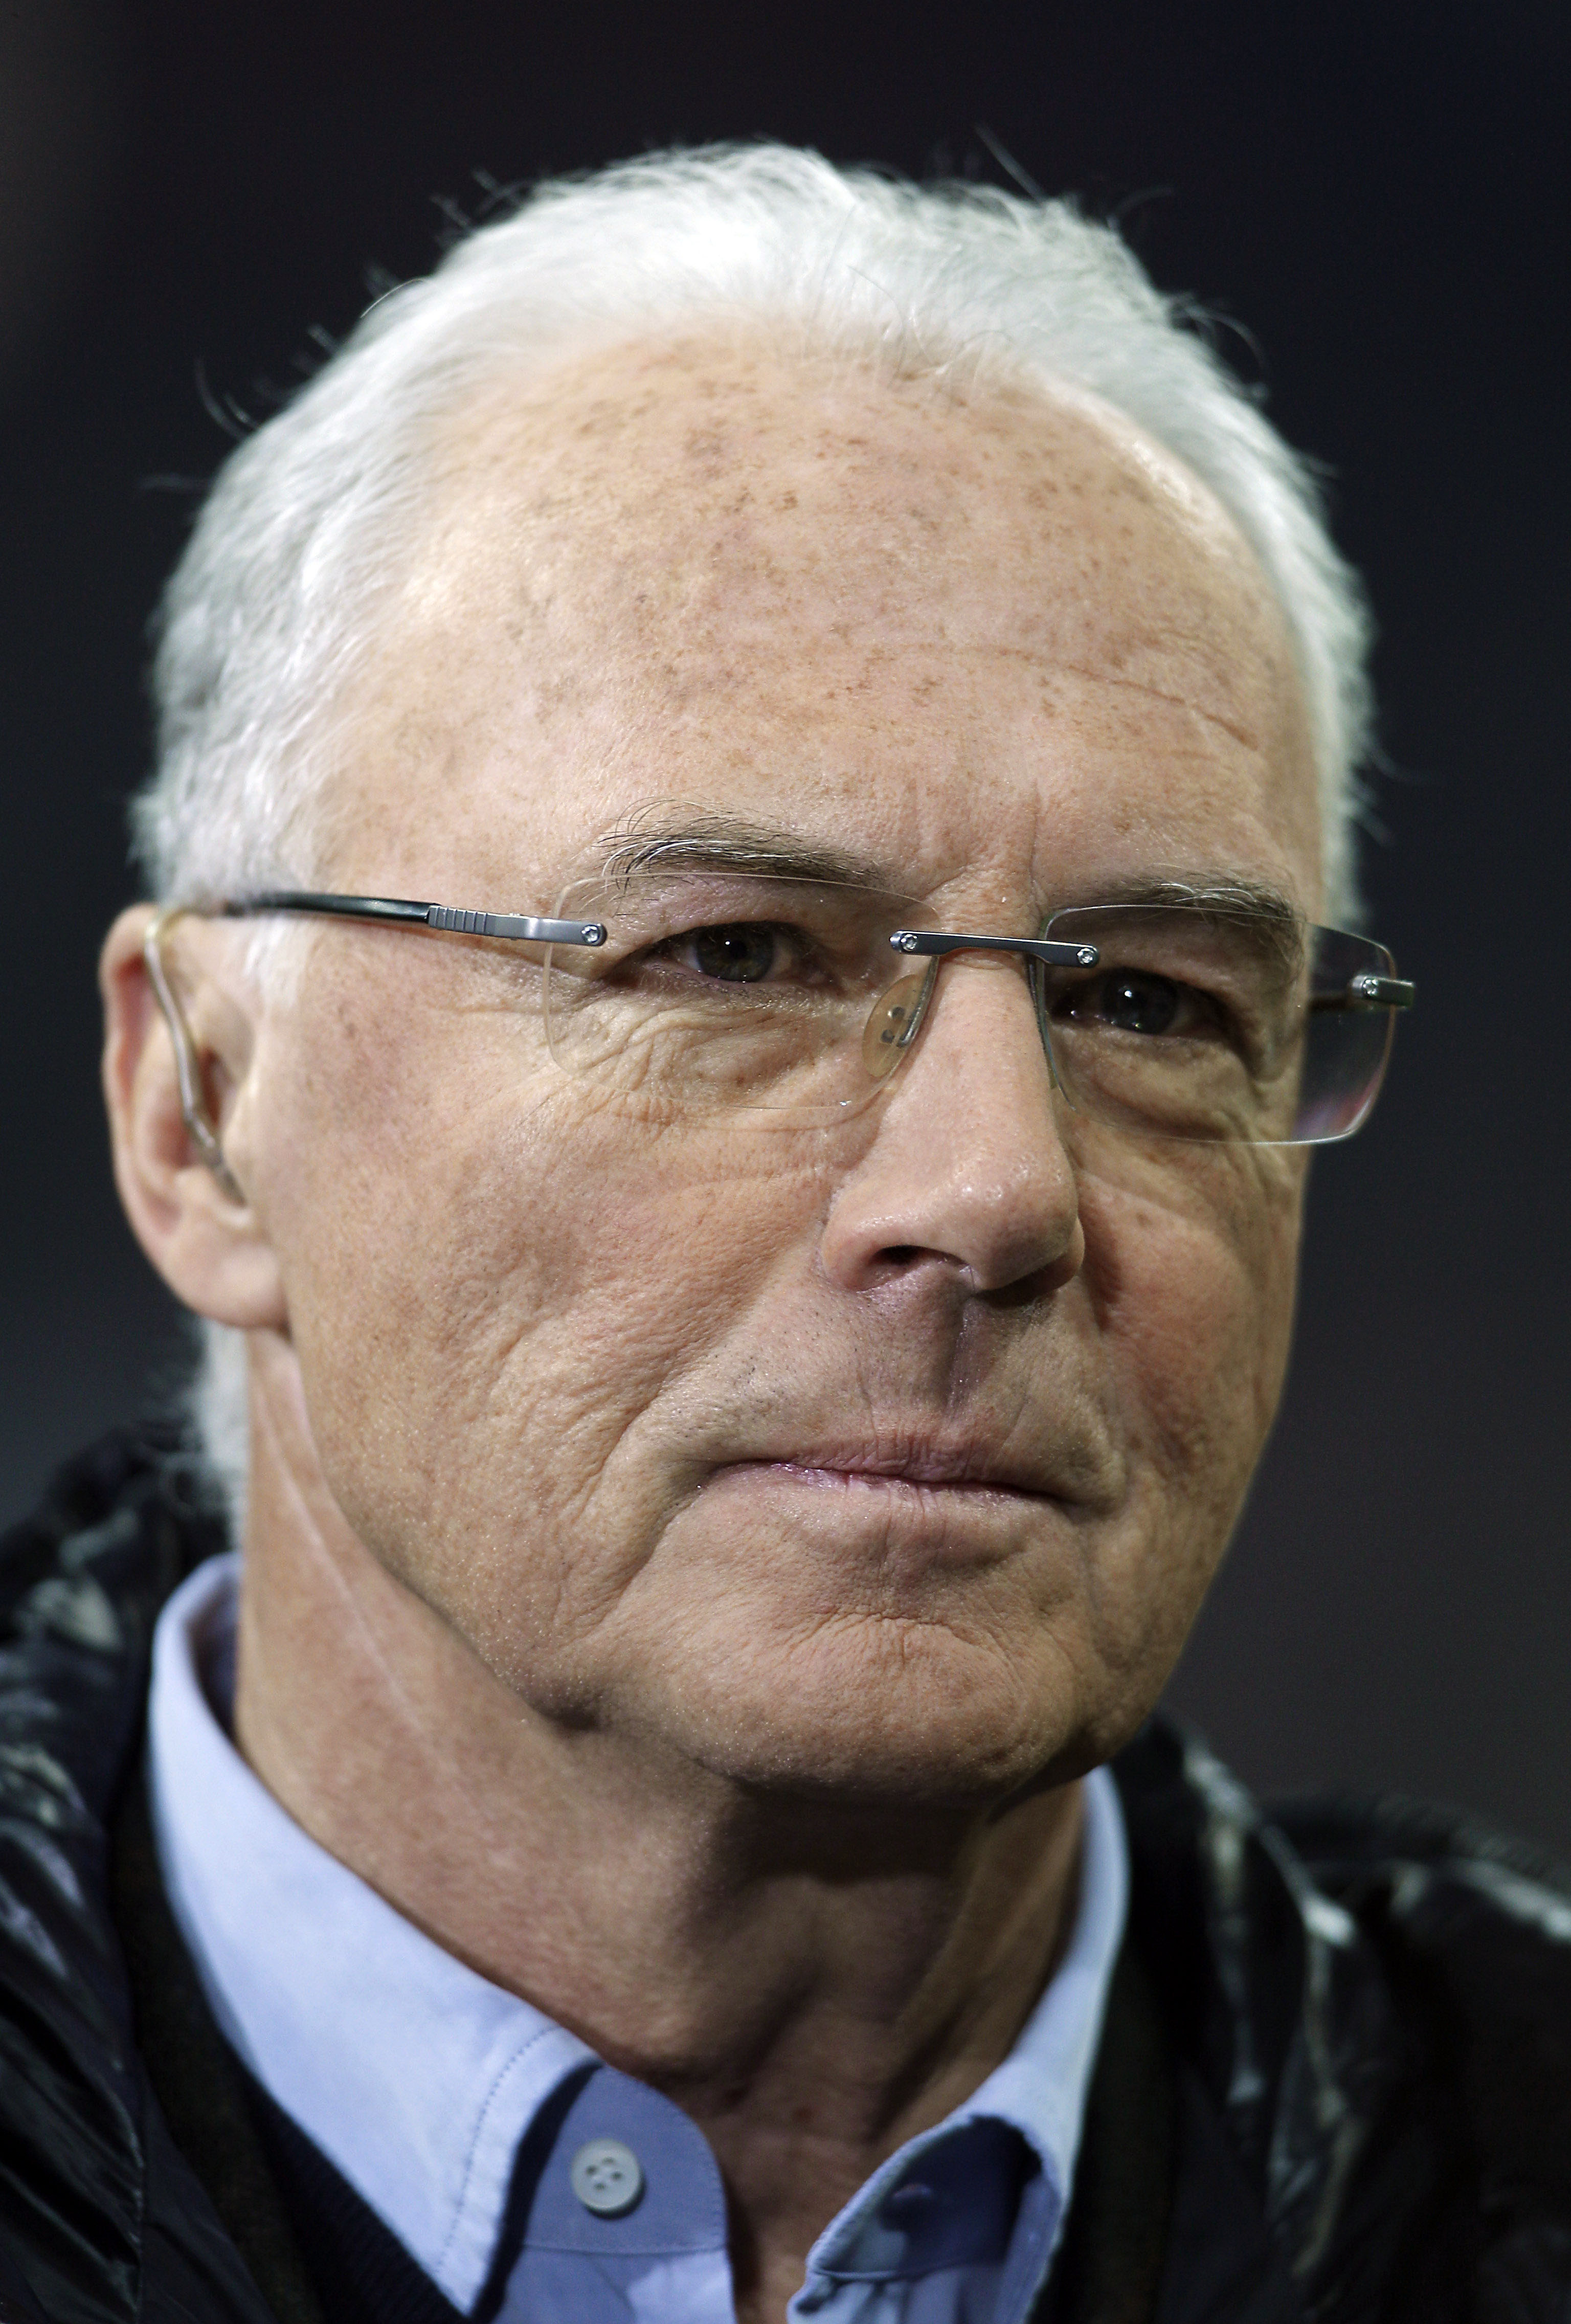 Franz Beckenbauer. Med "Der Kaiser" (kejsaren) som libro vann Västtyskland EM- och VM på 70-talet. Smeknamnet fick han för sin eleganta stil och sin goda speluppfattning.